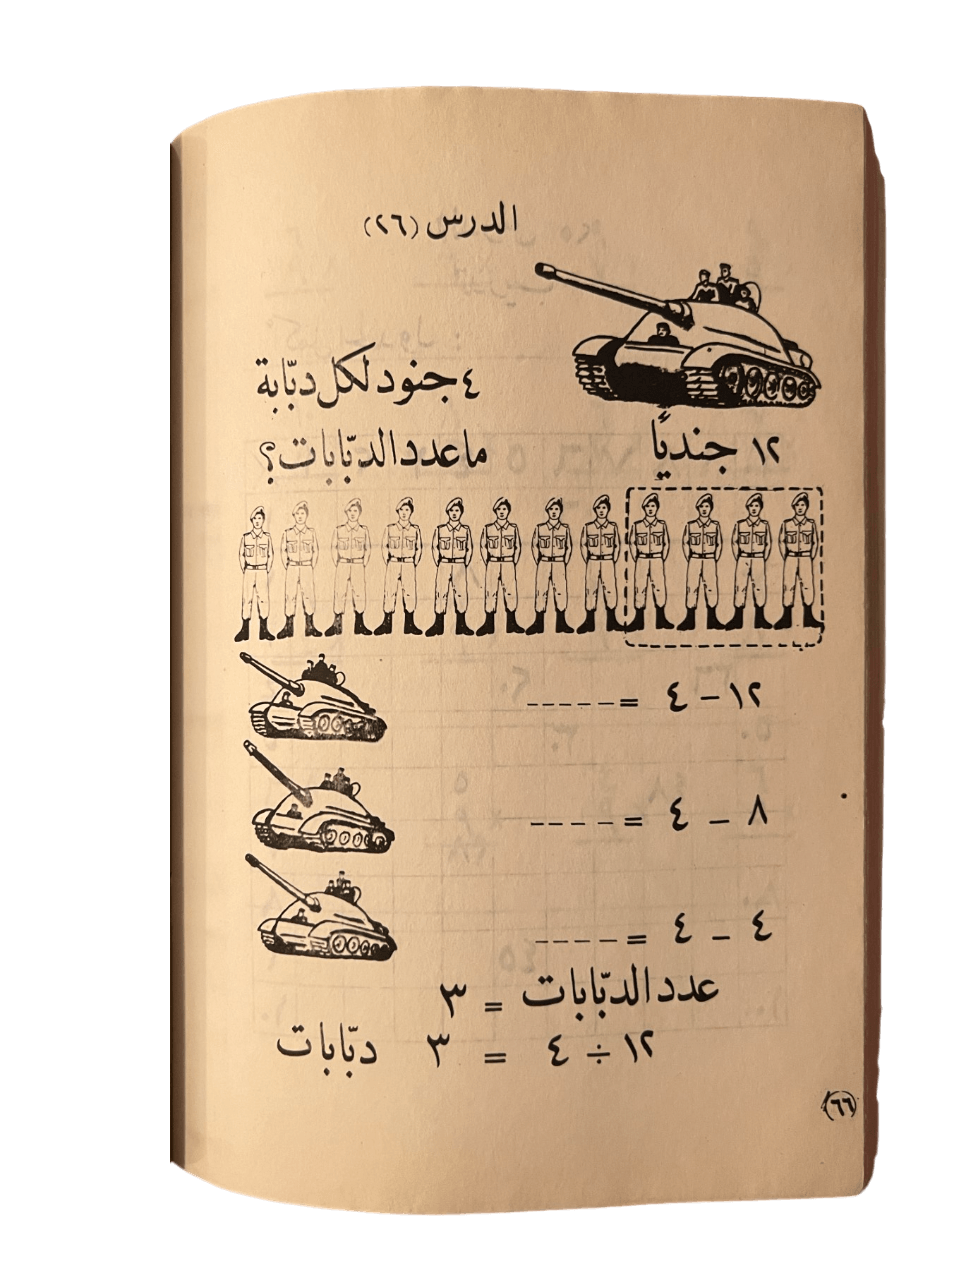 Iraqi Military Math Textbook - KHAJISTAN™